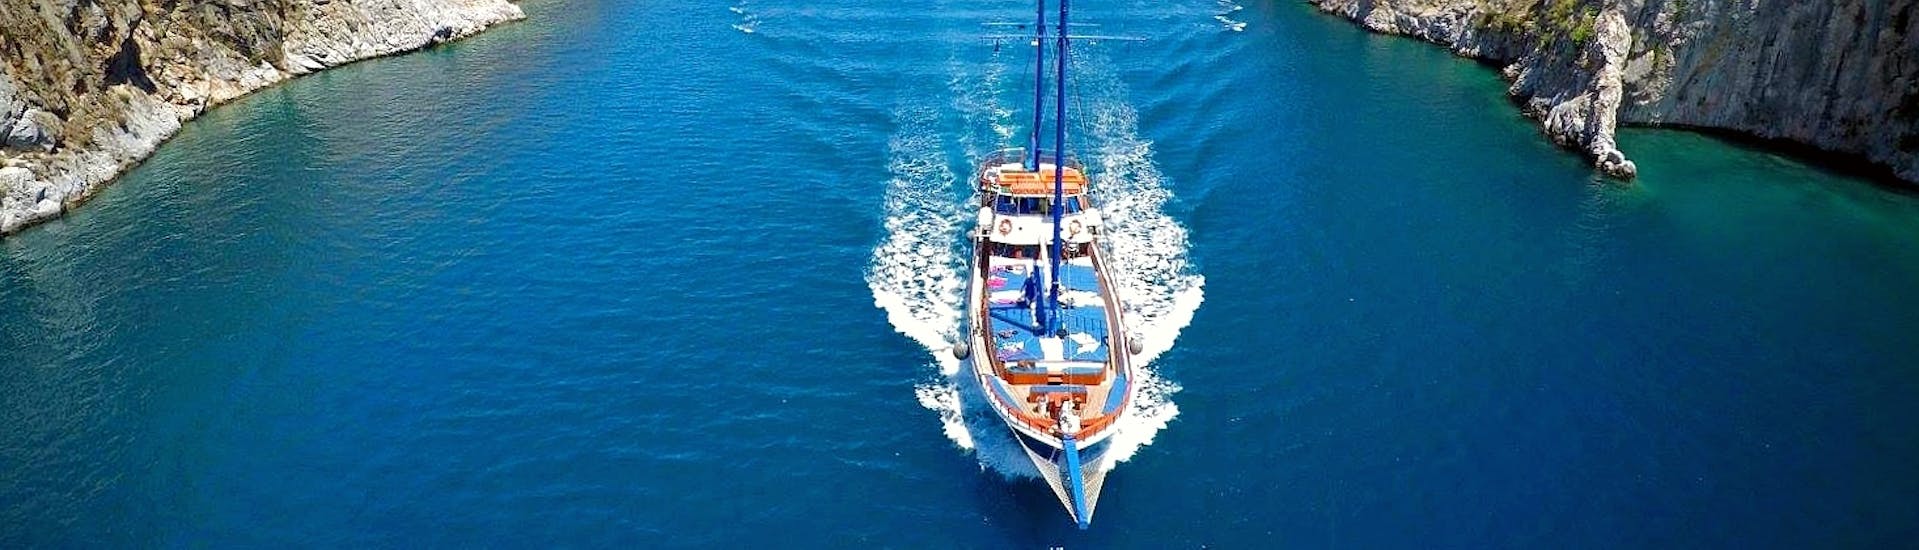 Un elegante velero navegando rápidamente en las aguas azules alrededor de las islas del Dodecaneso durante un viaje en velero a las islas Kalymnos, Plati y Pserimos con Odyssey Boat.